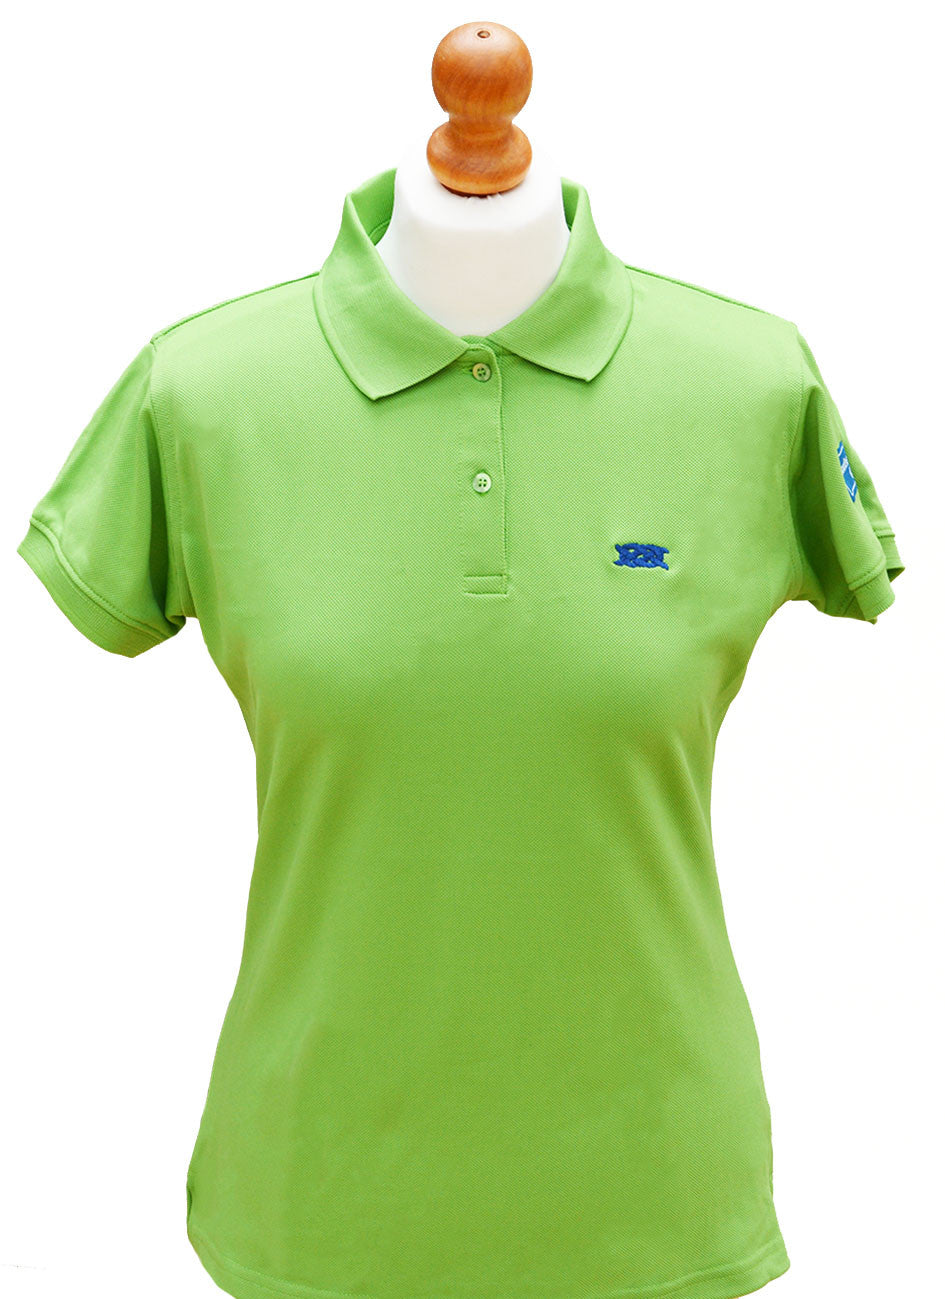 lime green womens golf shirt